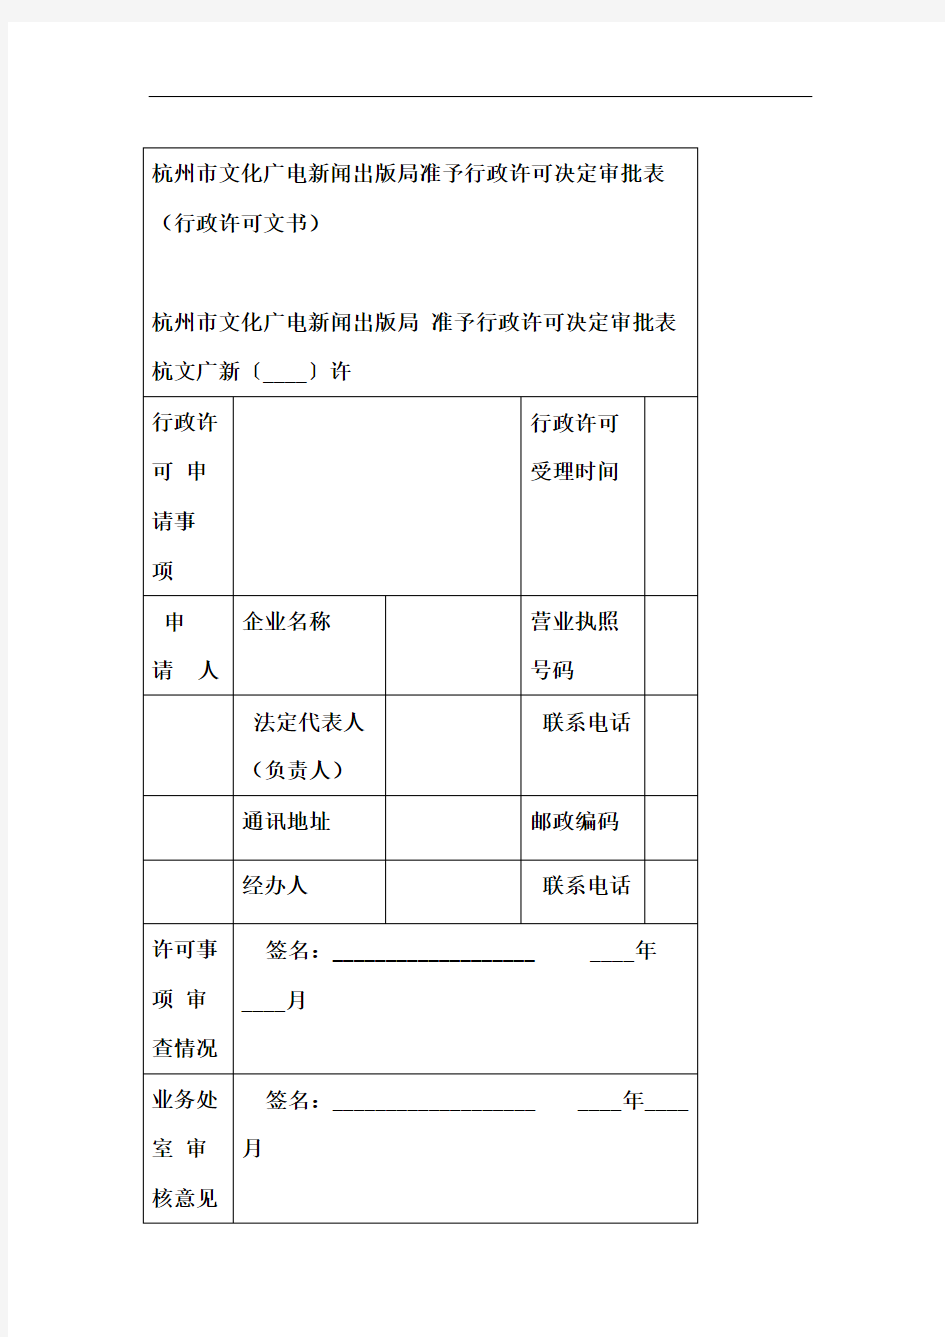 杭州文化广电新闻出版局准予行政许可决定审批表行政许可文书